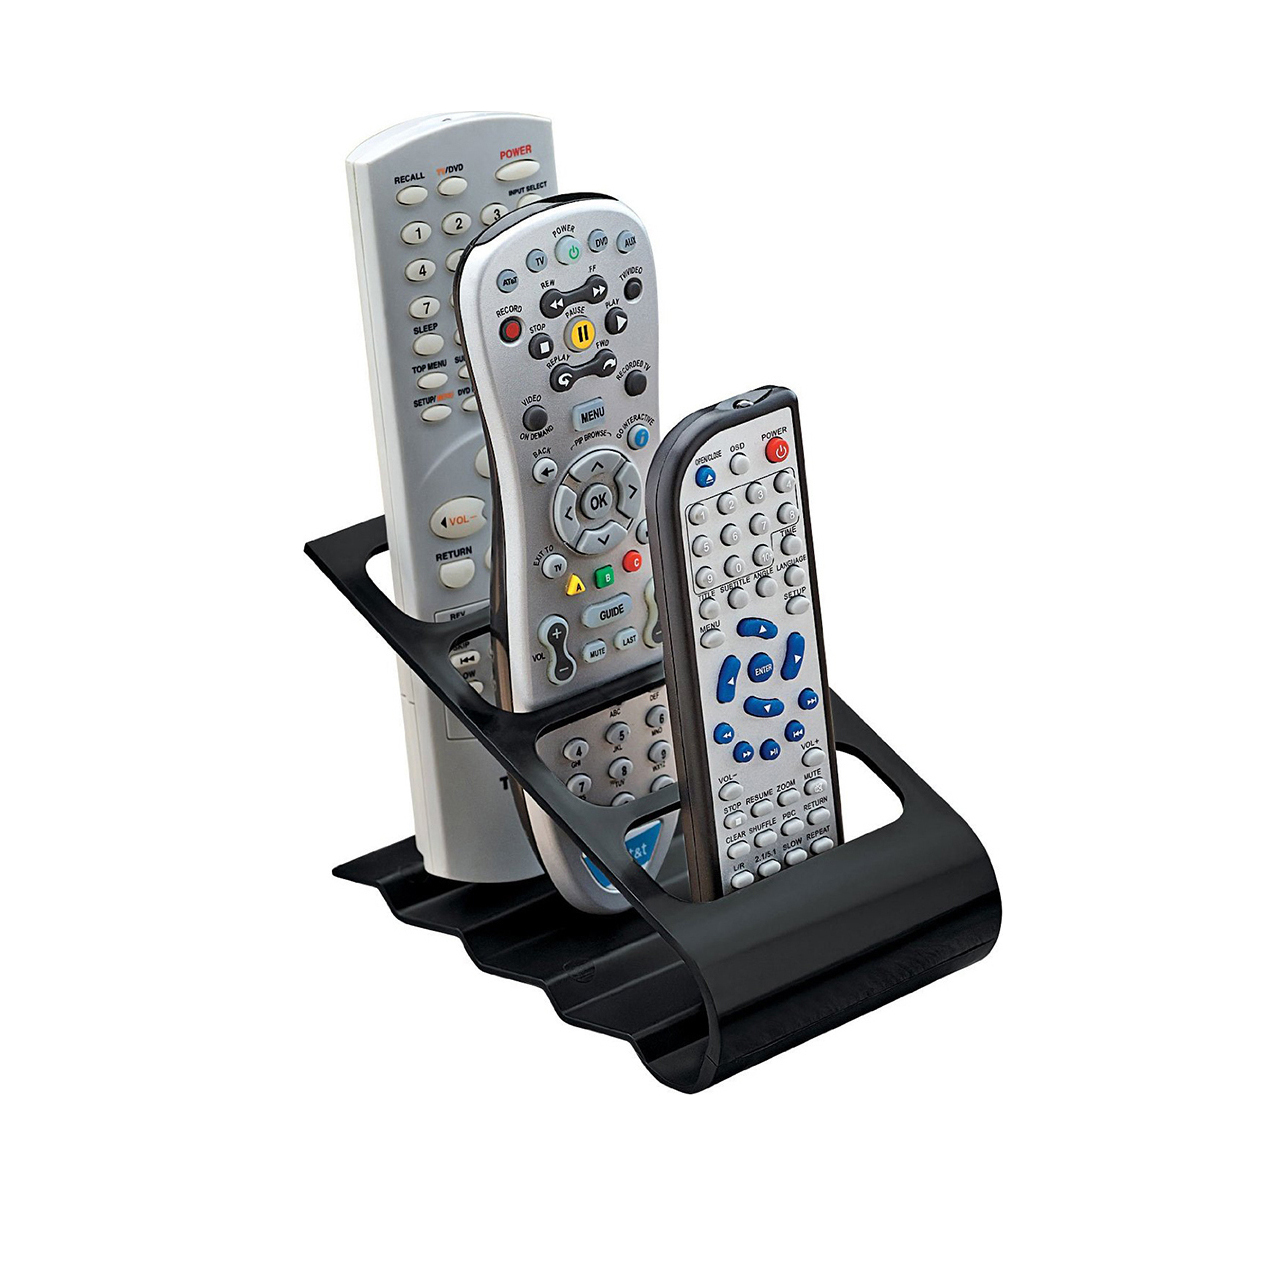 βαση οργανωσησ των 4 τηλεκοντρολ remote controls oem